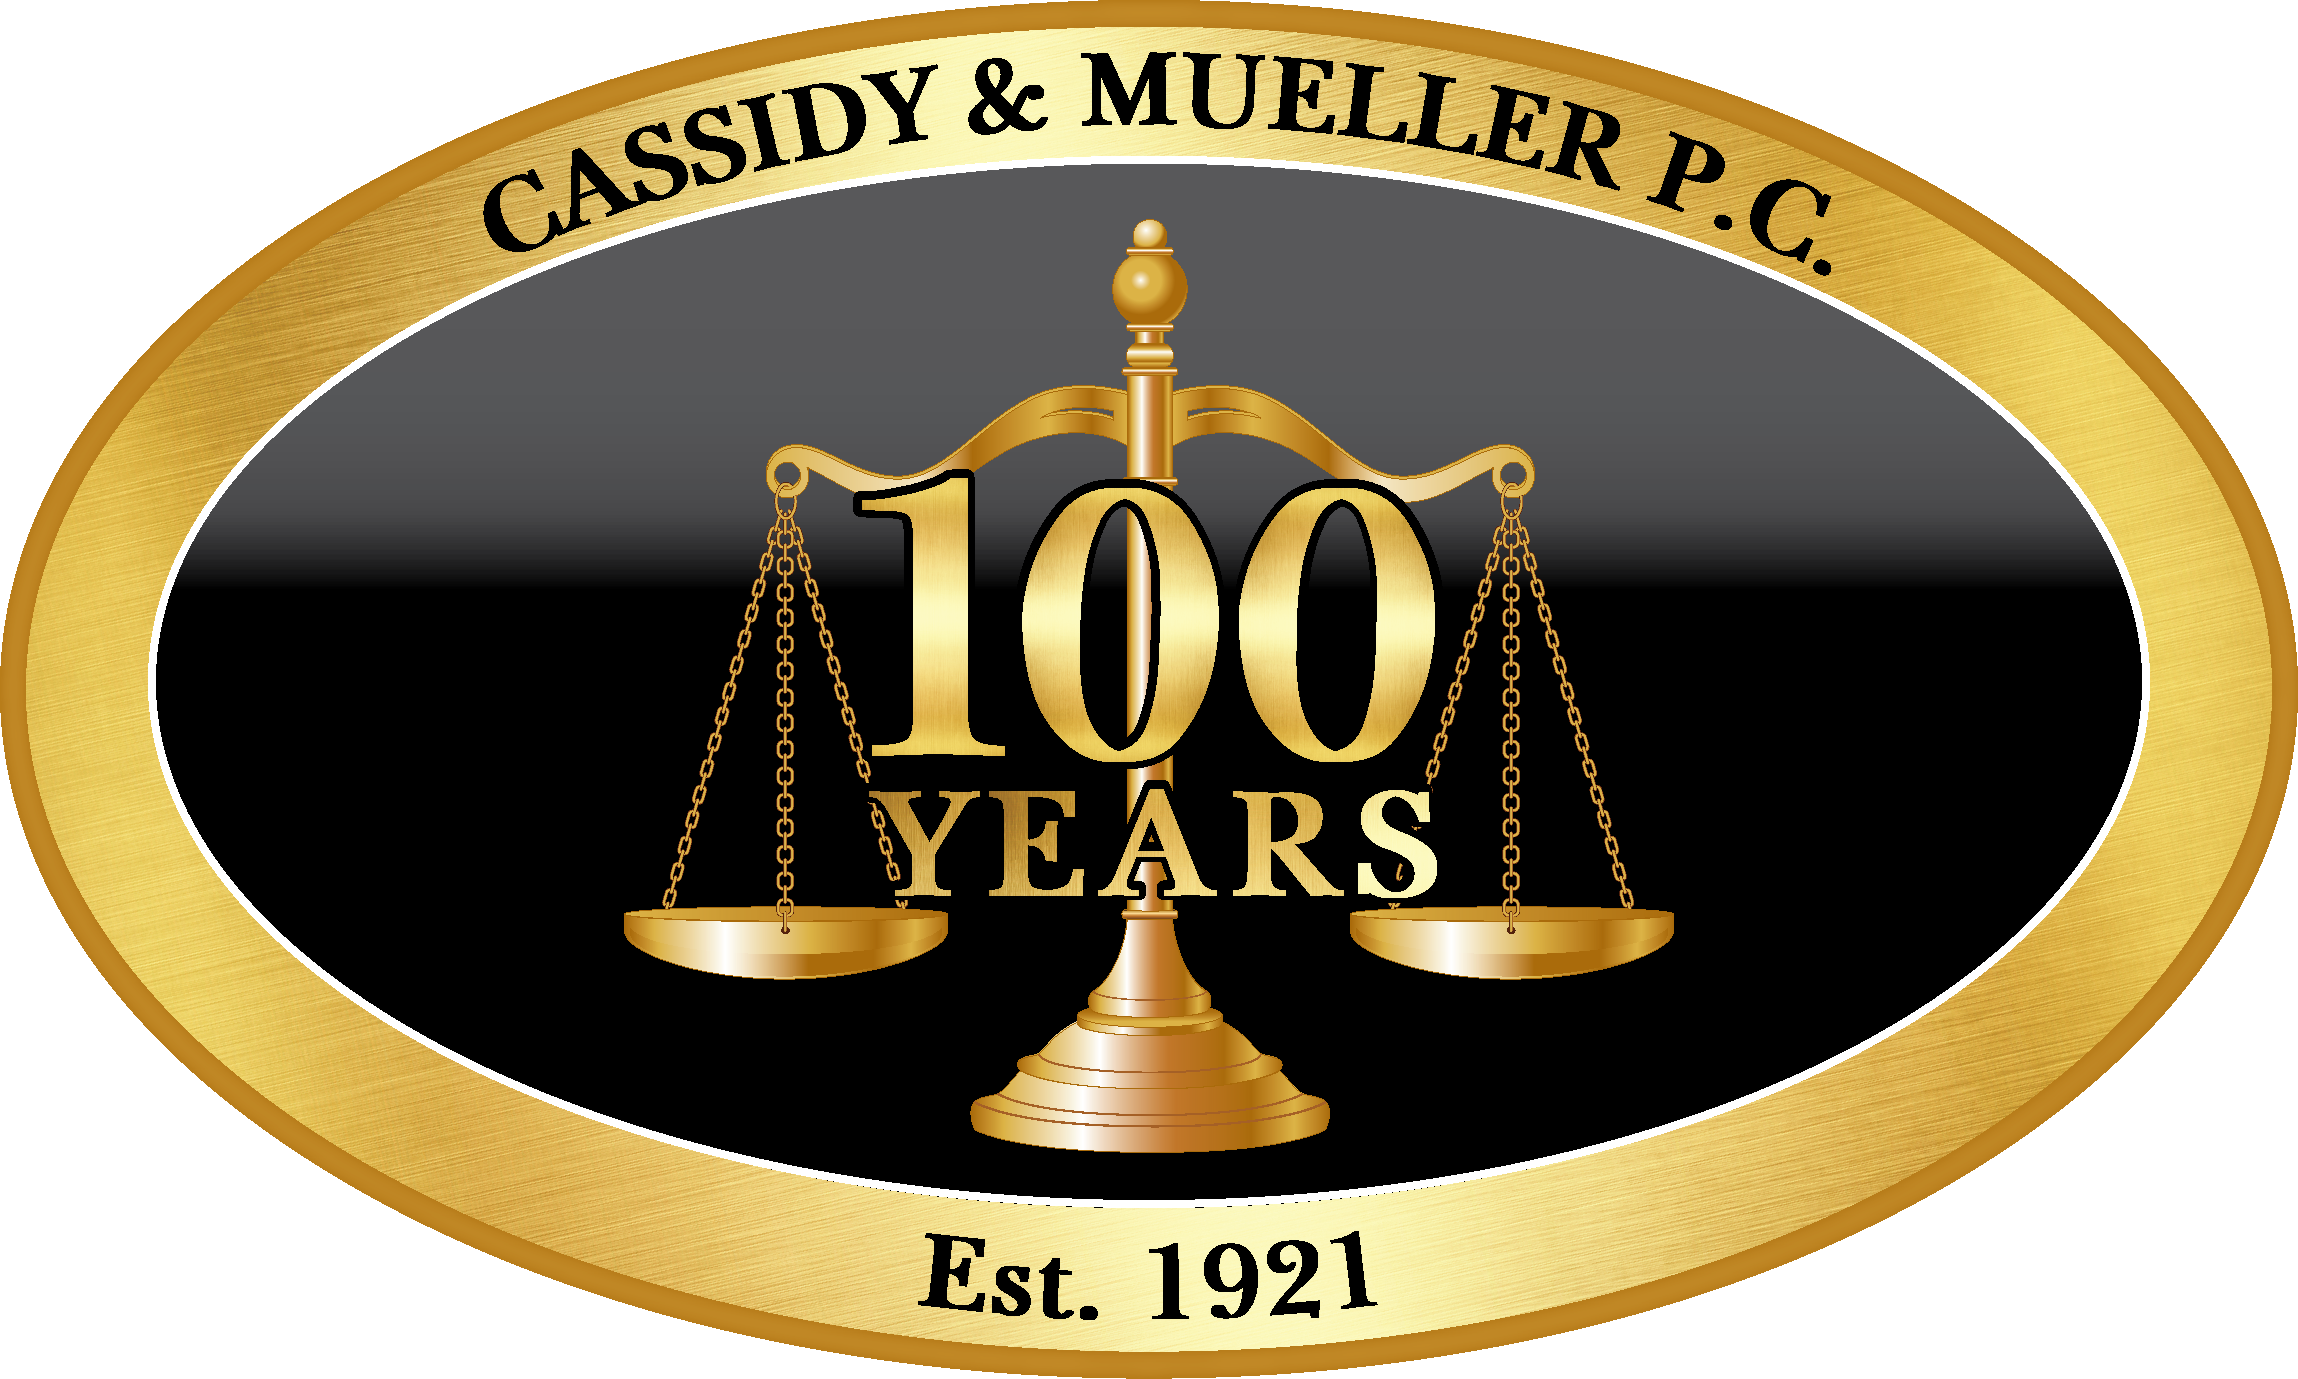 Cassidy & Mueller